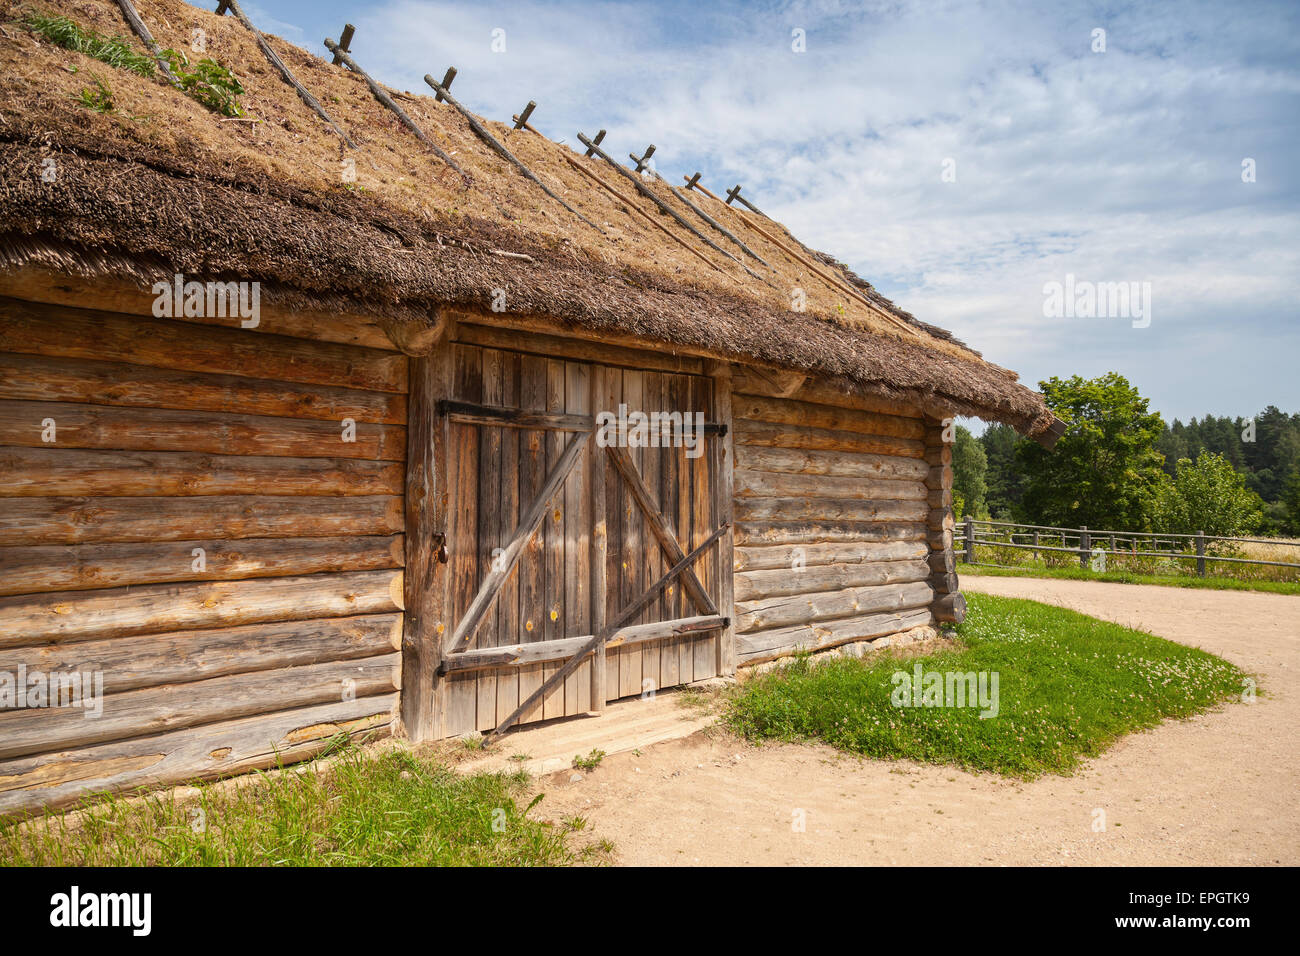 Les Russes par exemple l'architecture en bois, ancienne grange avec portail fermé Banque D'Images